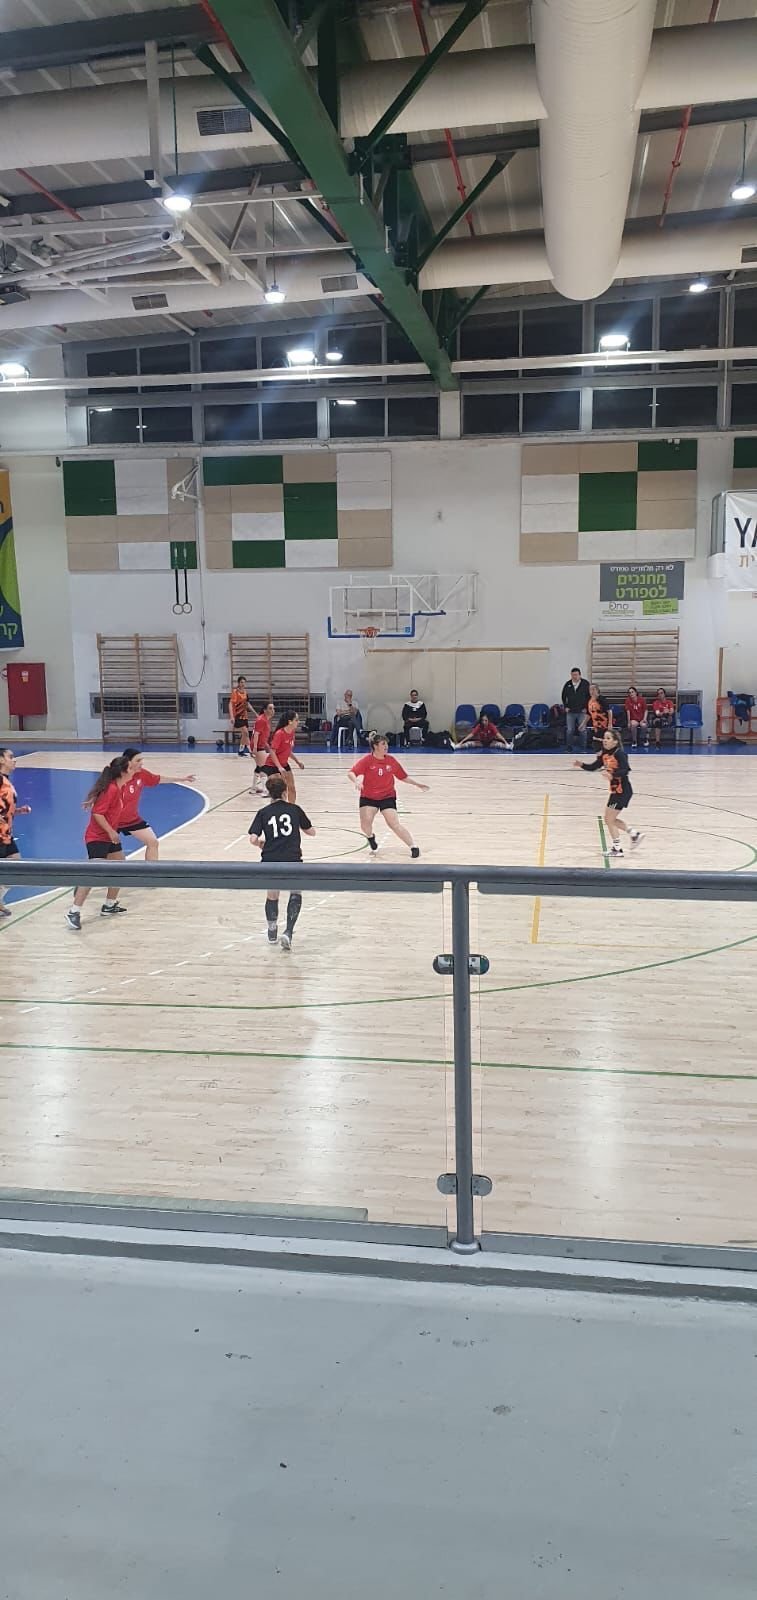 קרית אונו מפסידה לנס ציונה בתוצאה 23-19 בליגה לאומית נשים במחזור 7